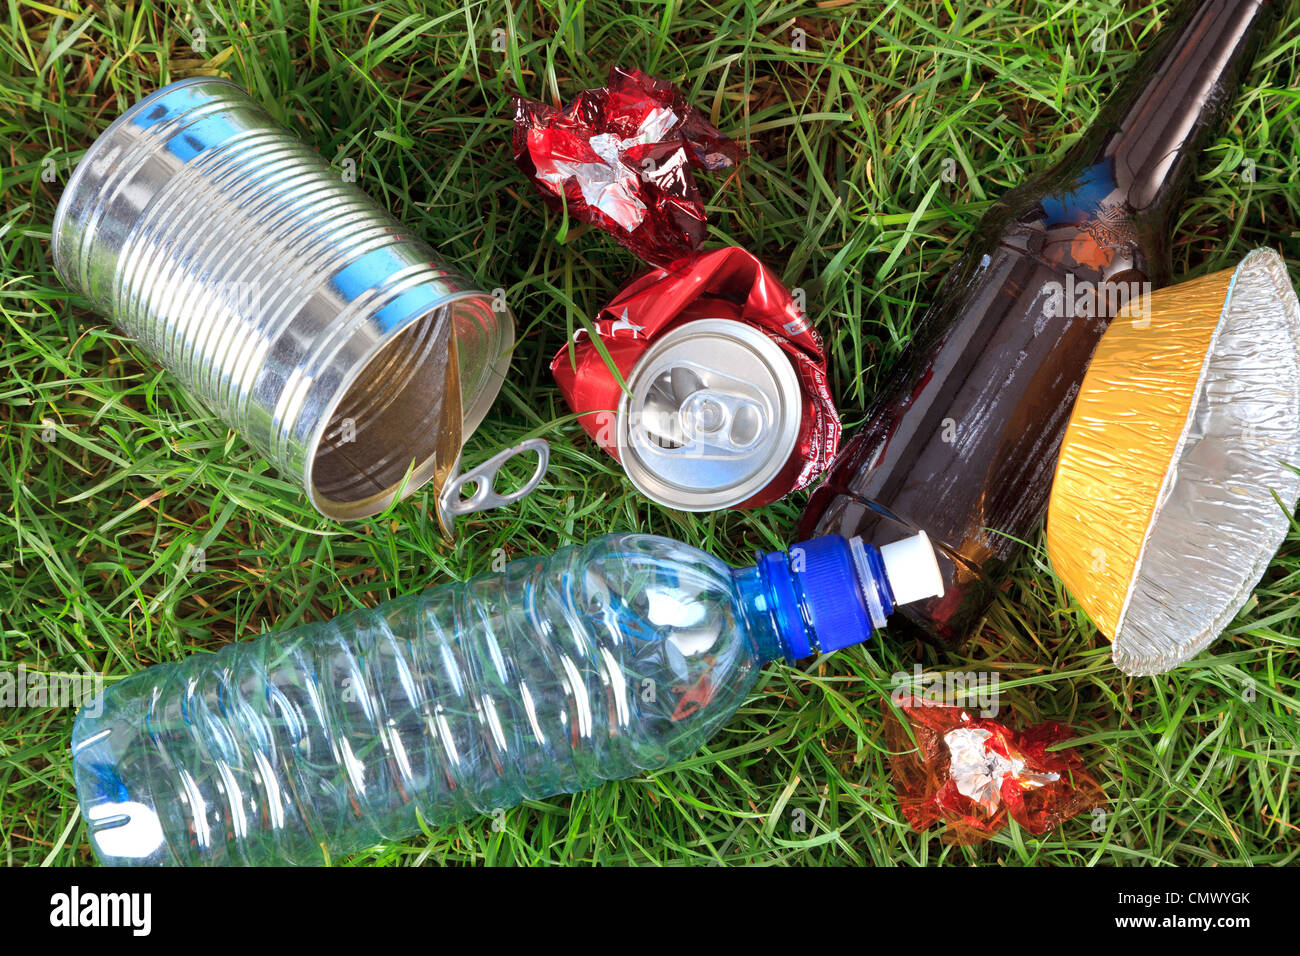 Foto der Sänfte auf Rasen, Flaschen, Dosen und Verpackungen. Stockfoto